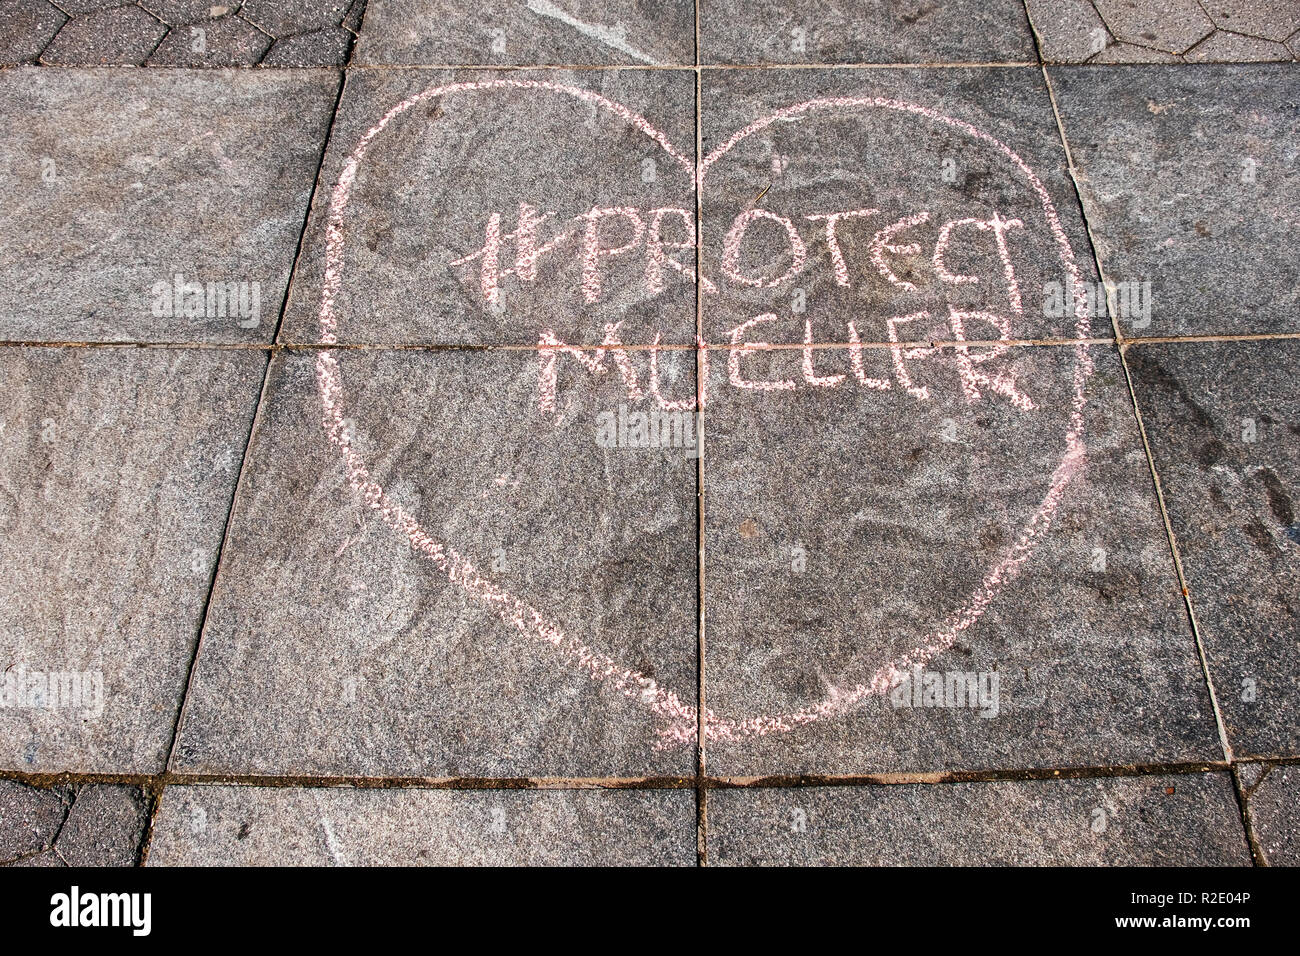 Un Chalk ione di scrittura Washington Square Park, invitando la gente a proteggere il Robert Mueller inchiesta contro Trump Foto Stock